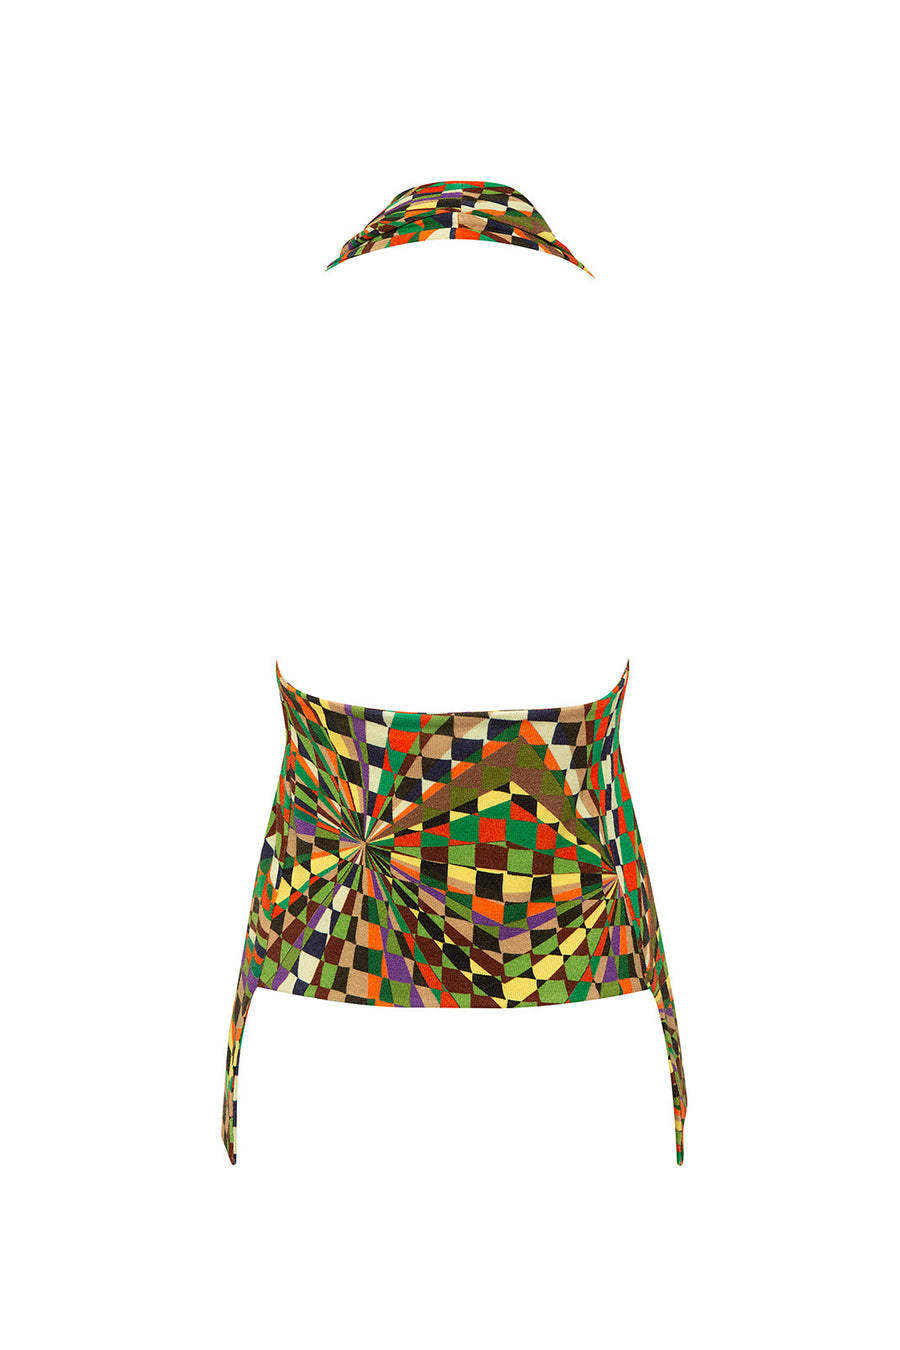 DYLAN - Kaleidoscope printed knit halter vest